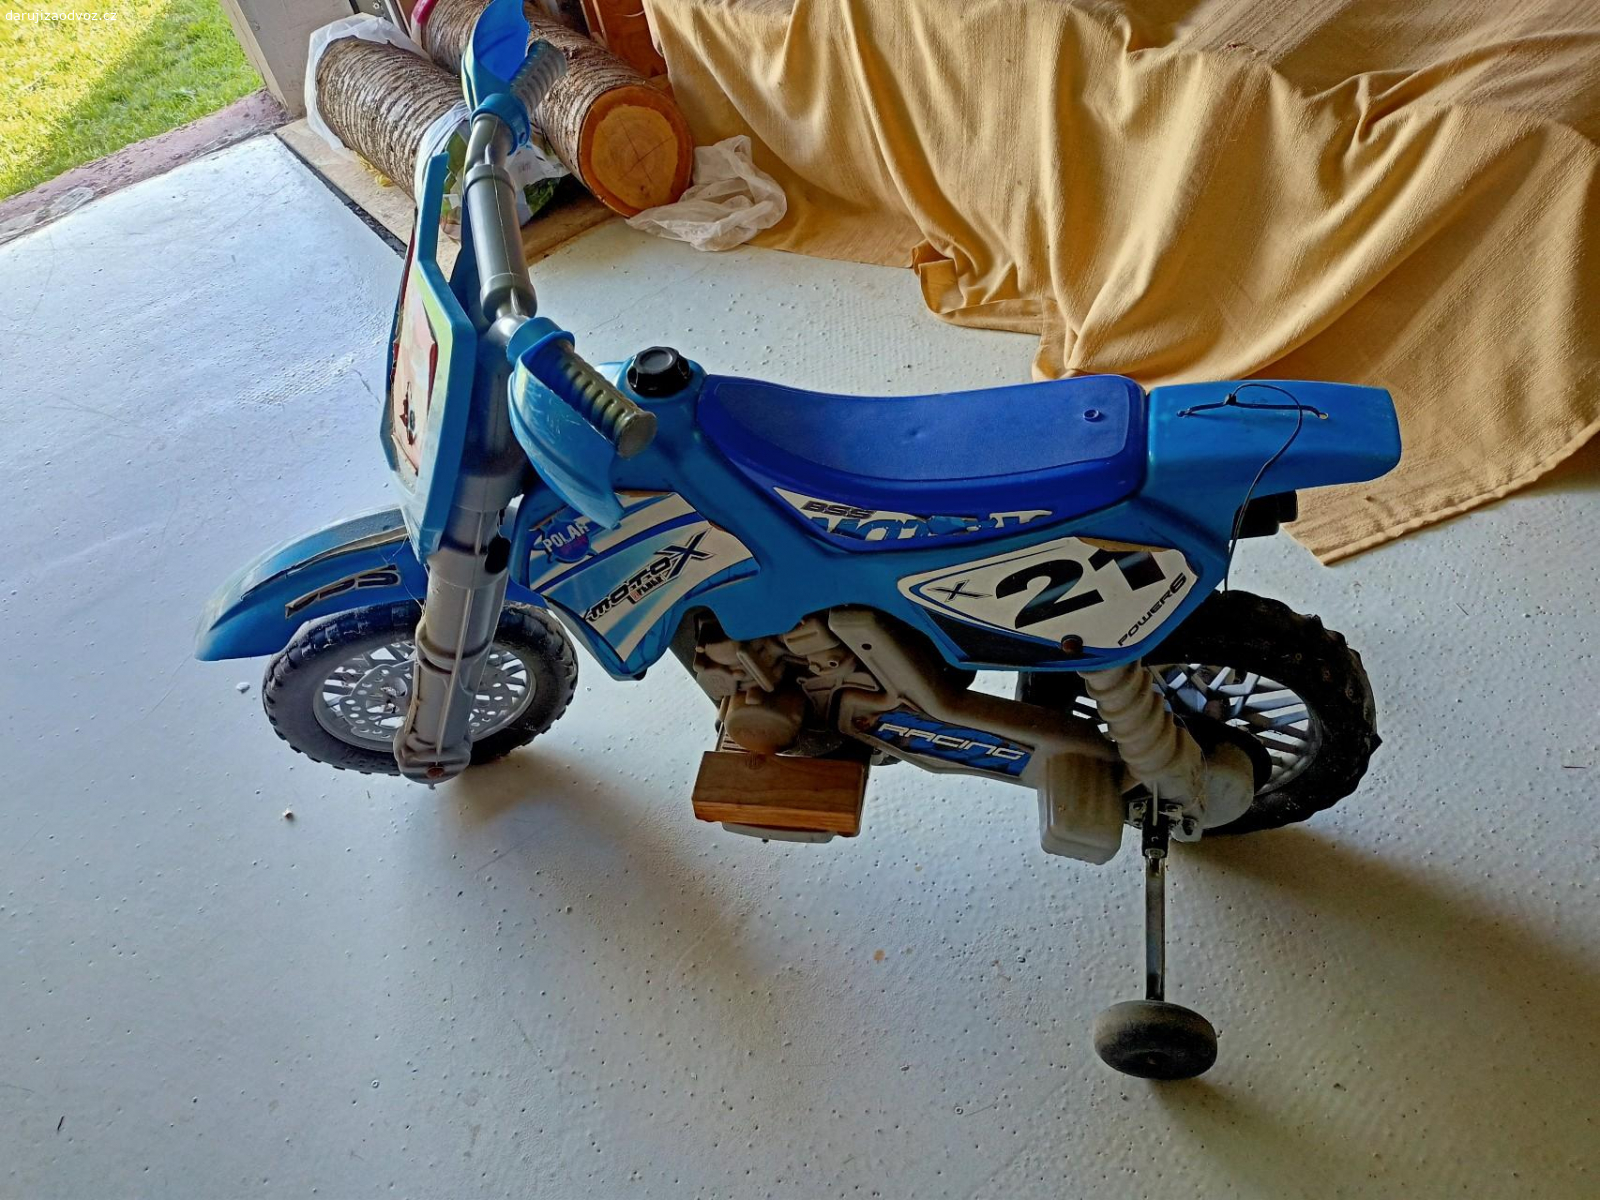 dětská motorka na baterky. nabíjecí baterie, jezdí, akorát se musí nabít (nabíječka není součástí nabídky - používá se 6V)